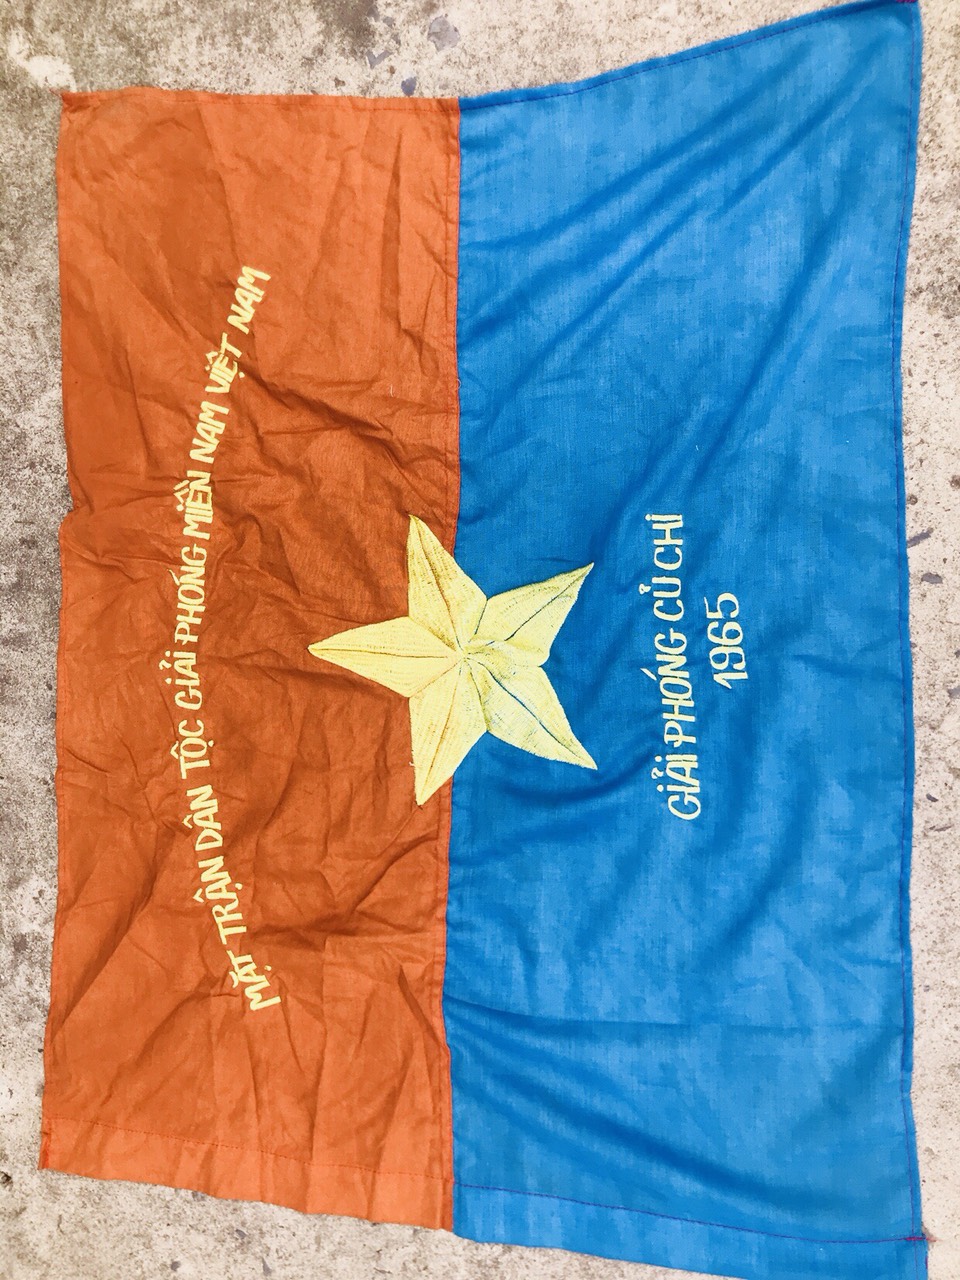 Cờ giải phóng miền Nam Việt Nam - Hình ảnh cờ giải phóng miền Nam Việt Nam đang trong tầm ngắm của bạn. Điều này là một cơ hội để nhìn lại lịch sử đấu tranh giải phóng dân tộc của Việt Nam. Hãy cùng chiêm ngưỡng hình ảnh này và tôn vinh những người đã đóng góp cho sự giải phóng đất nước.